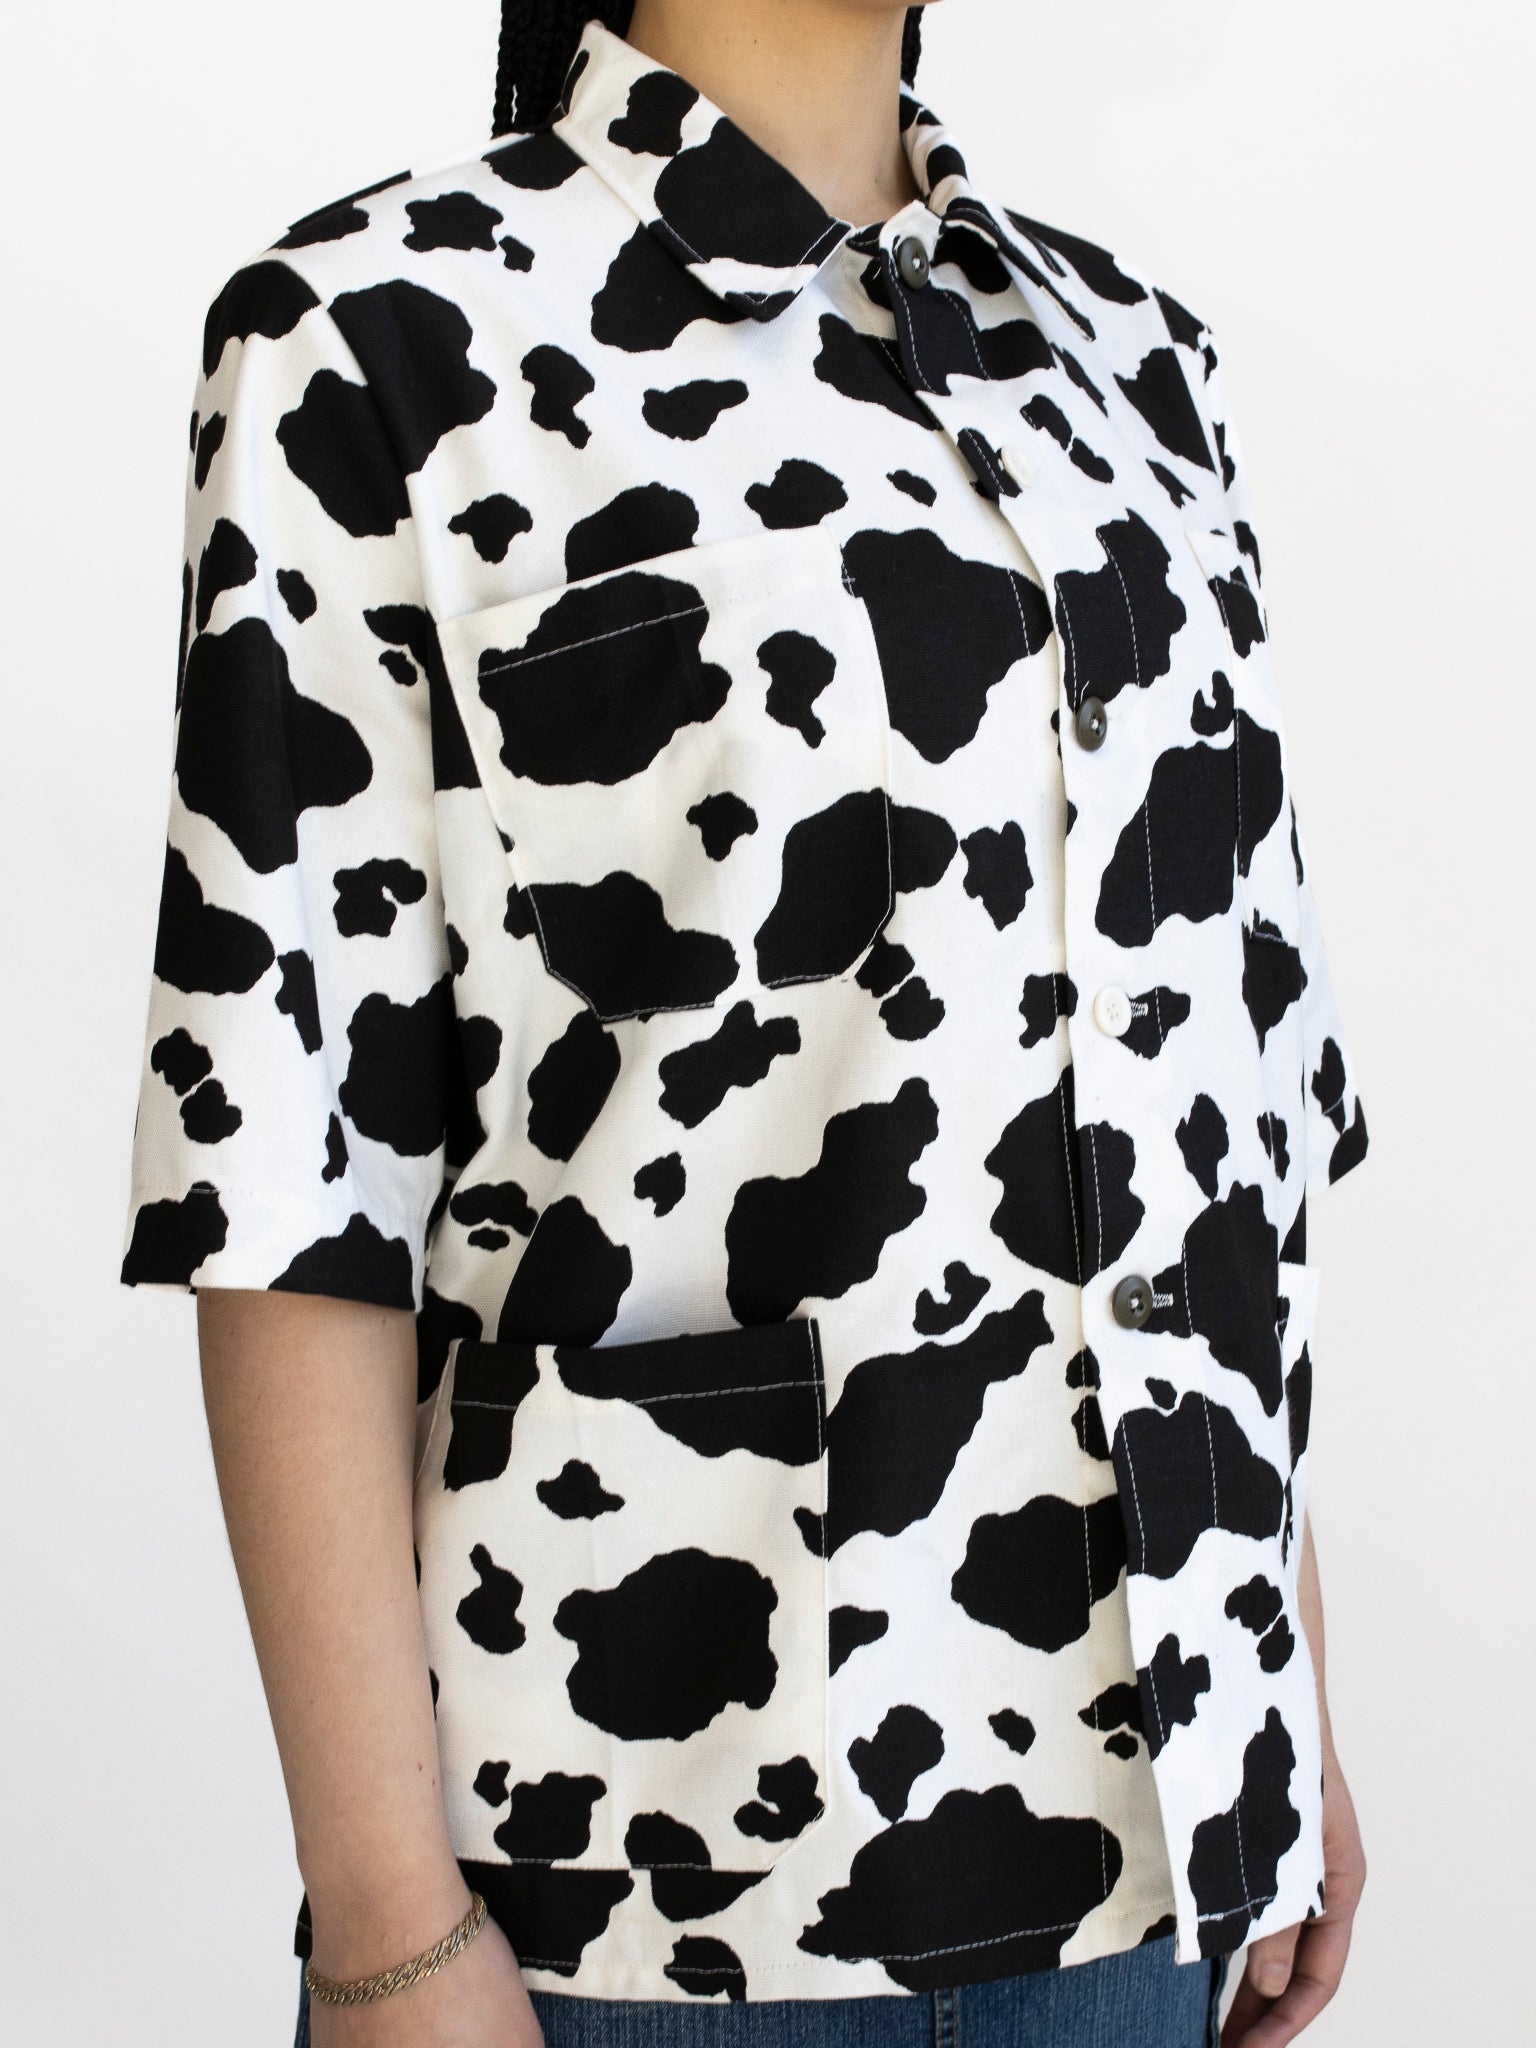 The Series - Cow Print Chore Shirt (L)